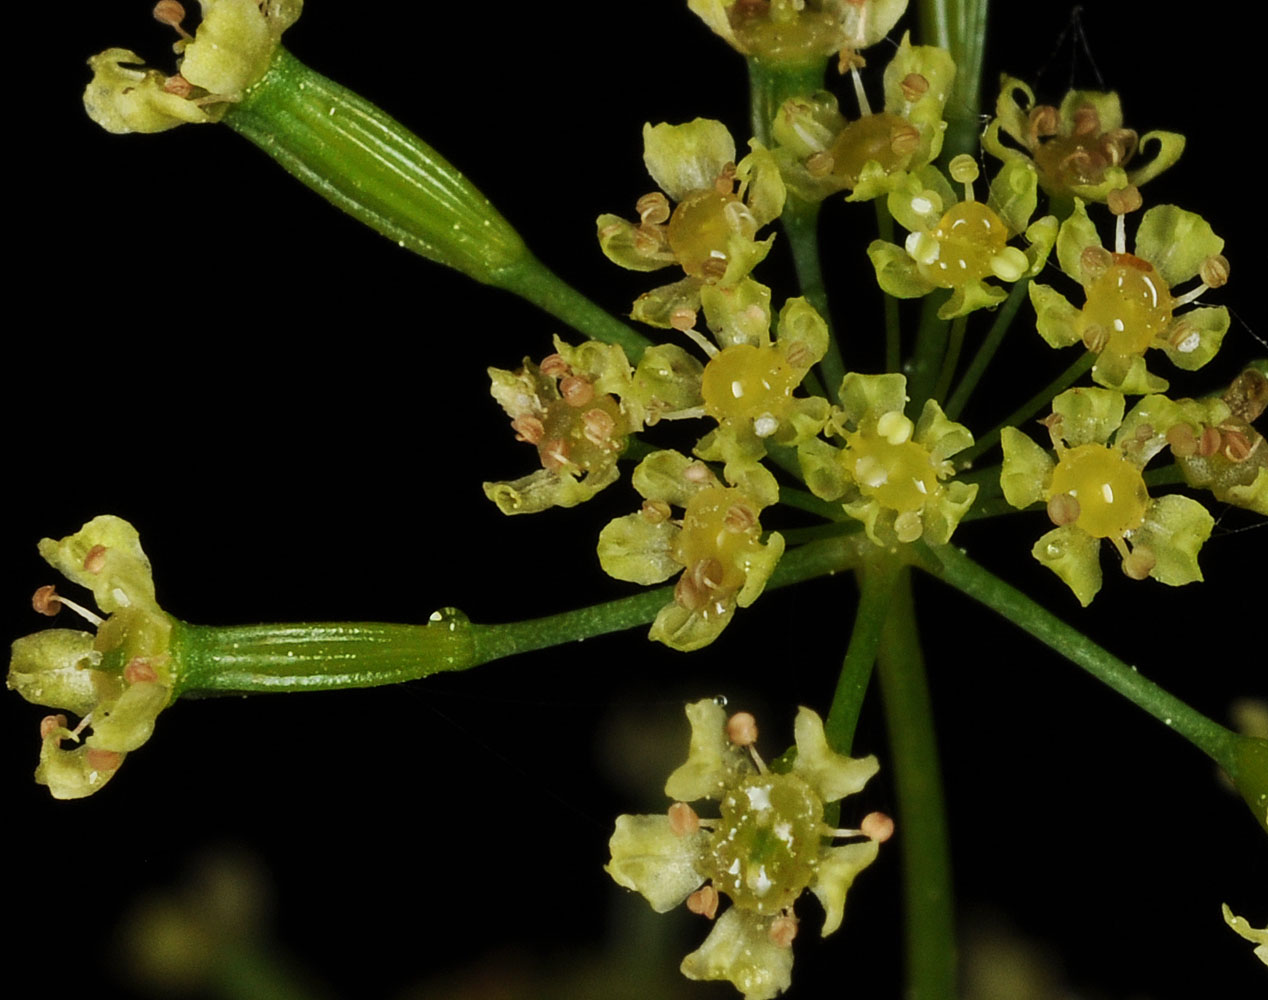 Flora of Eastern Washington Image: Osmorhiza occidentalis